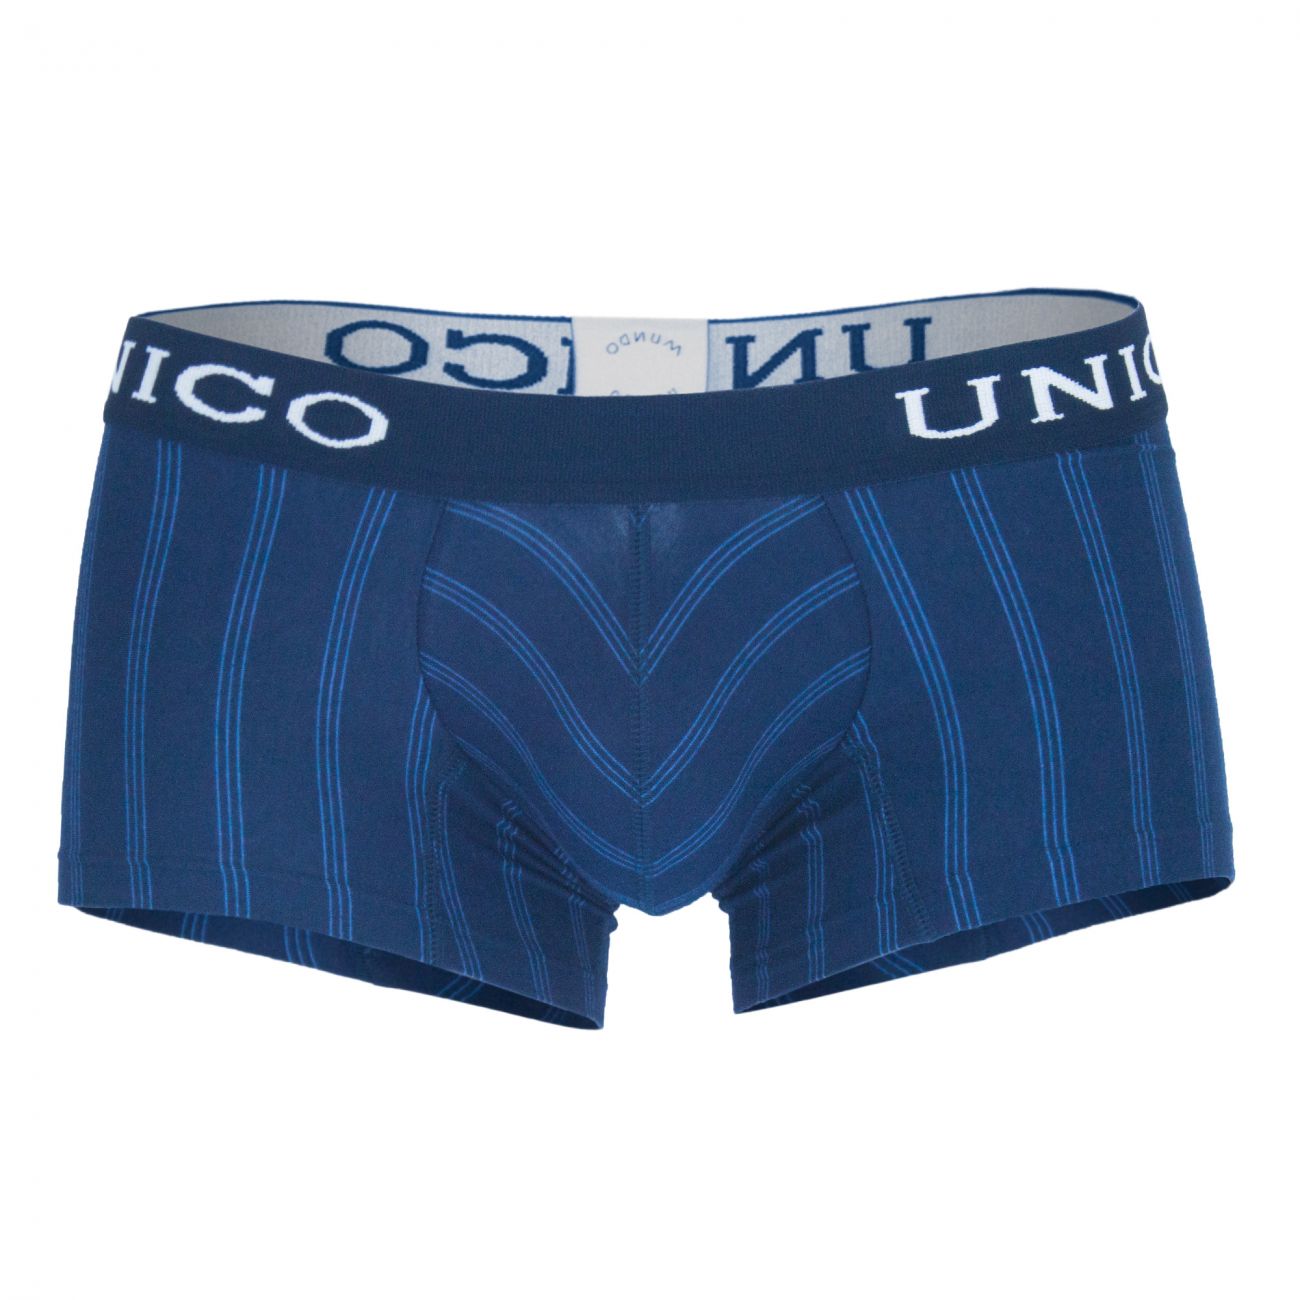 Unico (1410010010582) Boxer Briefs Paralelo Cotton